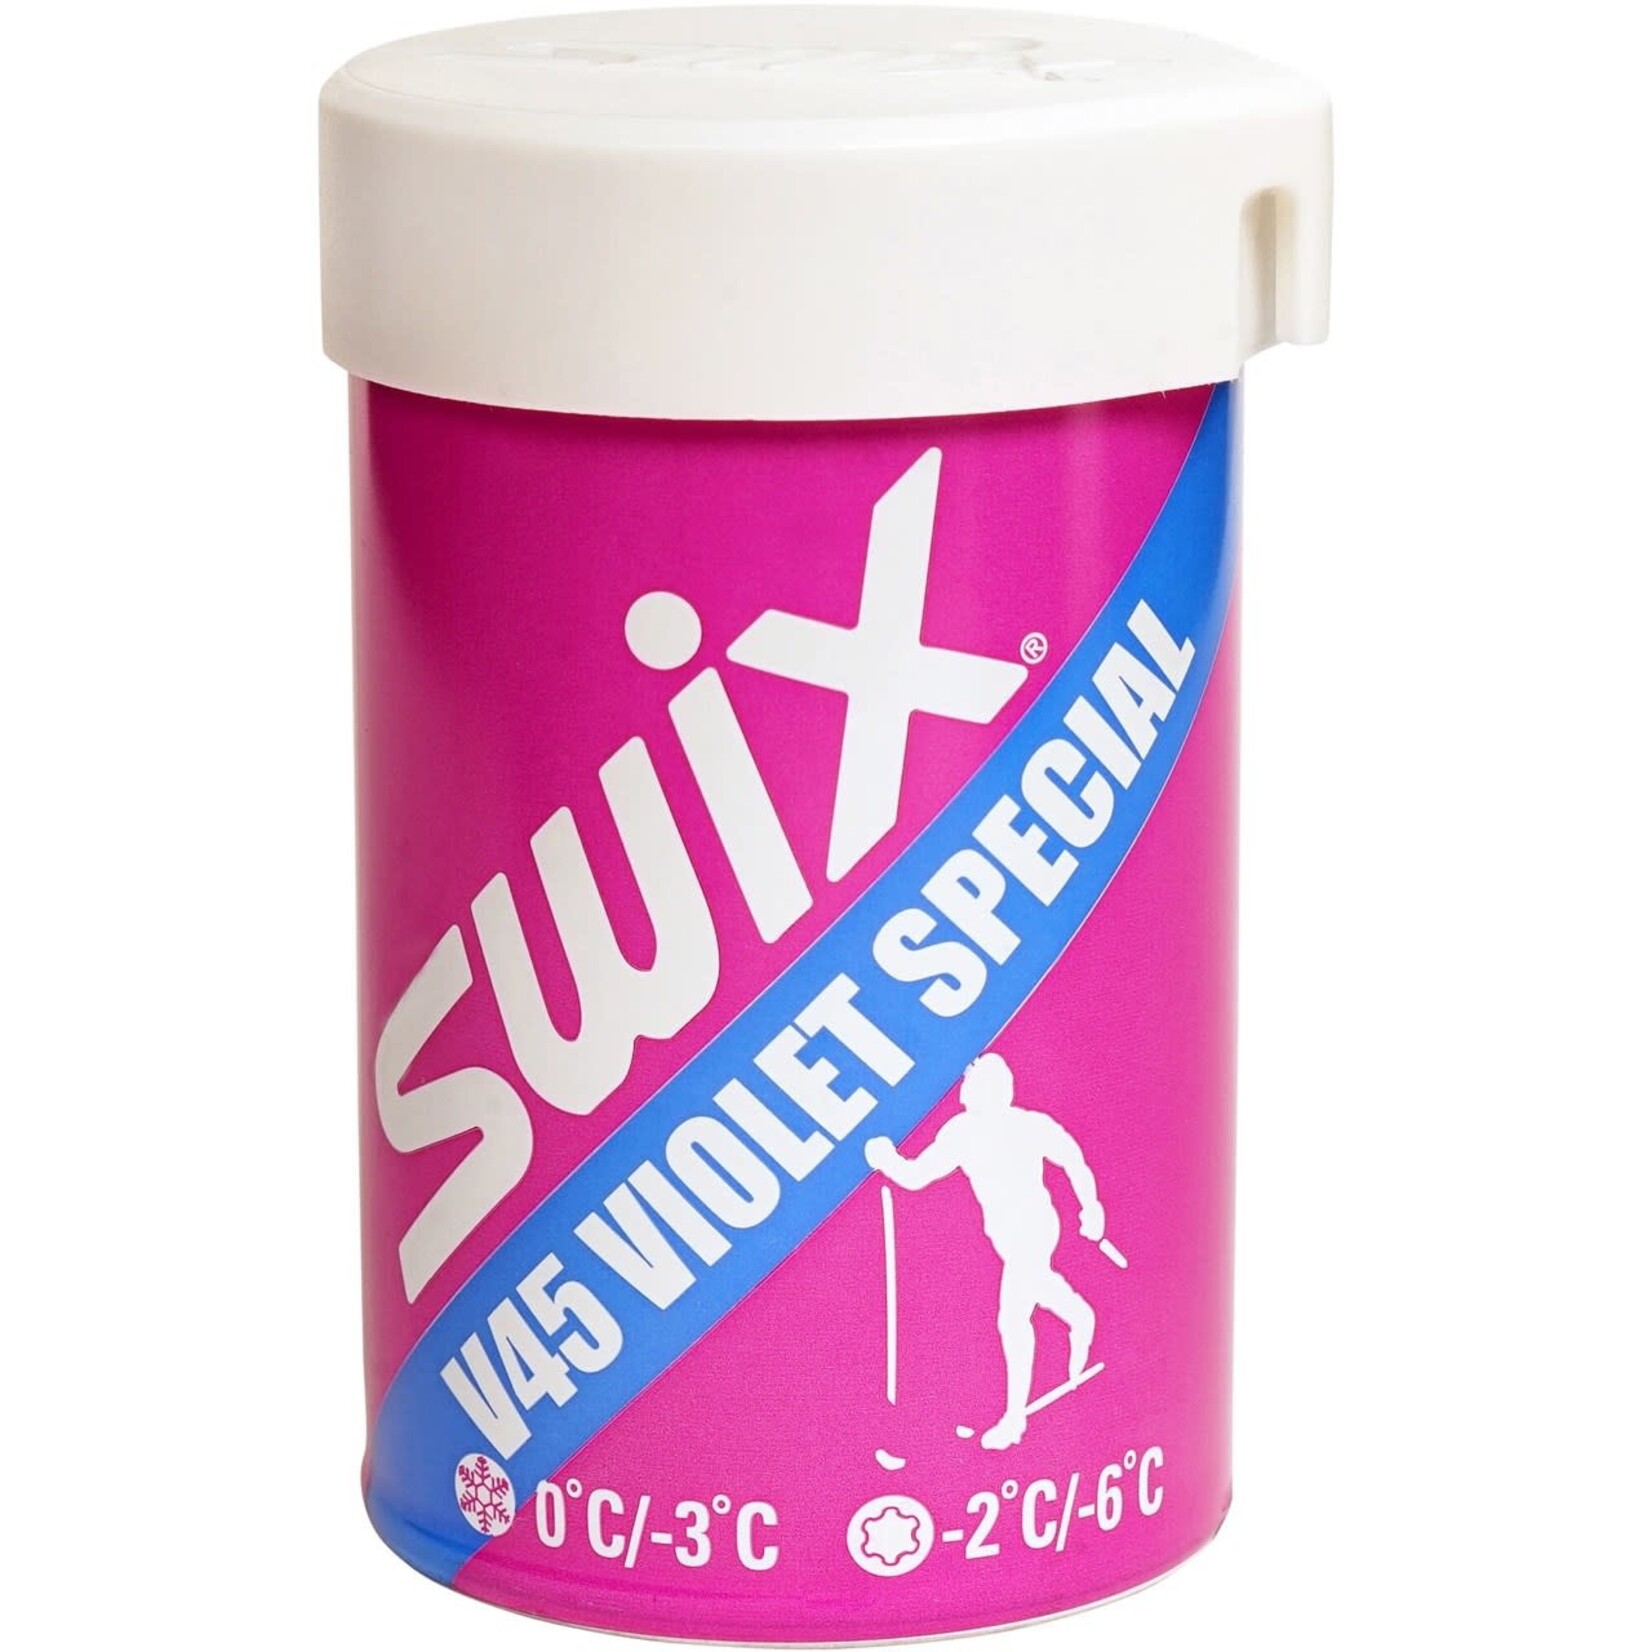 Swix Fart de retenue violet spécial V45 0/-3 45 g